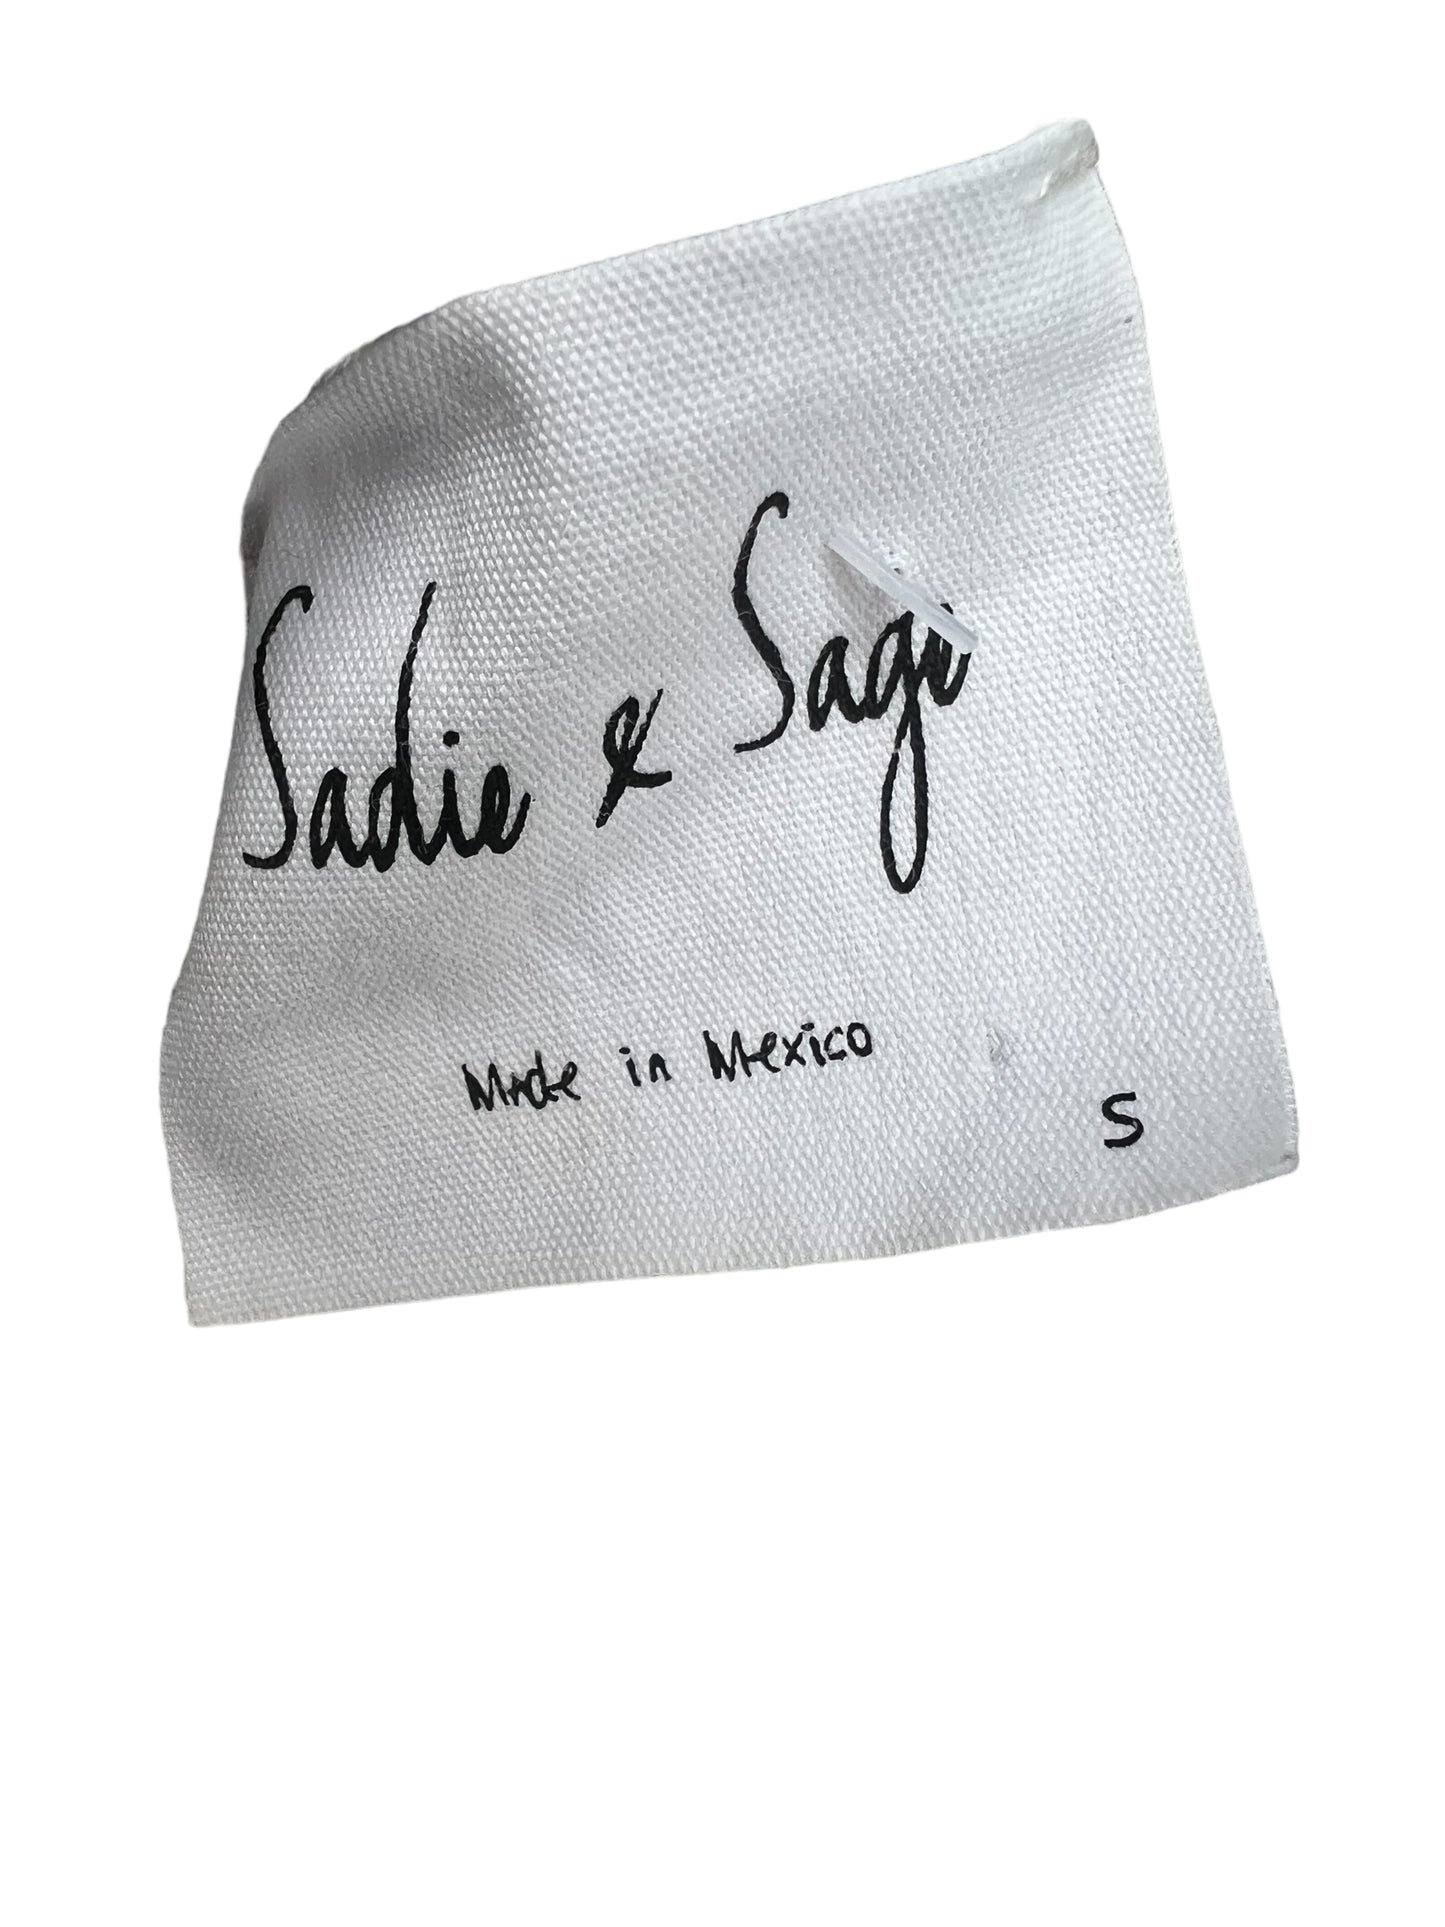 Sadie & Sage Top